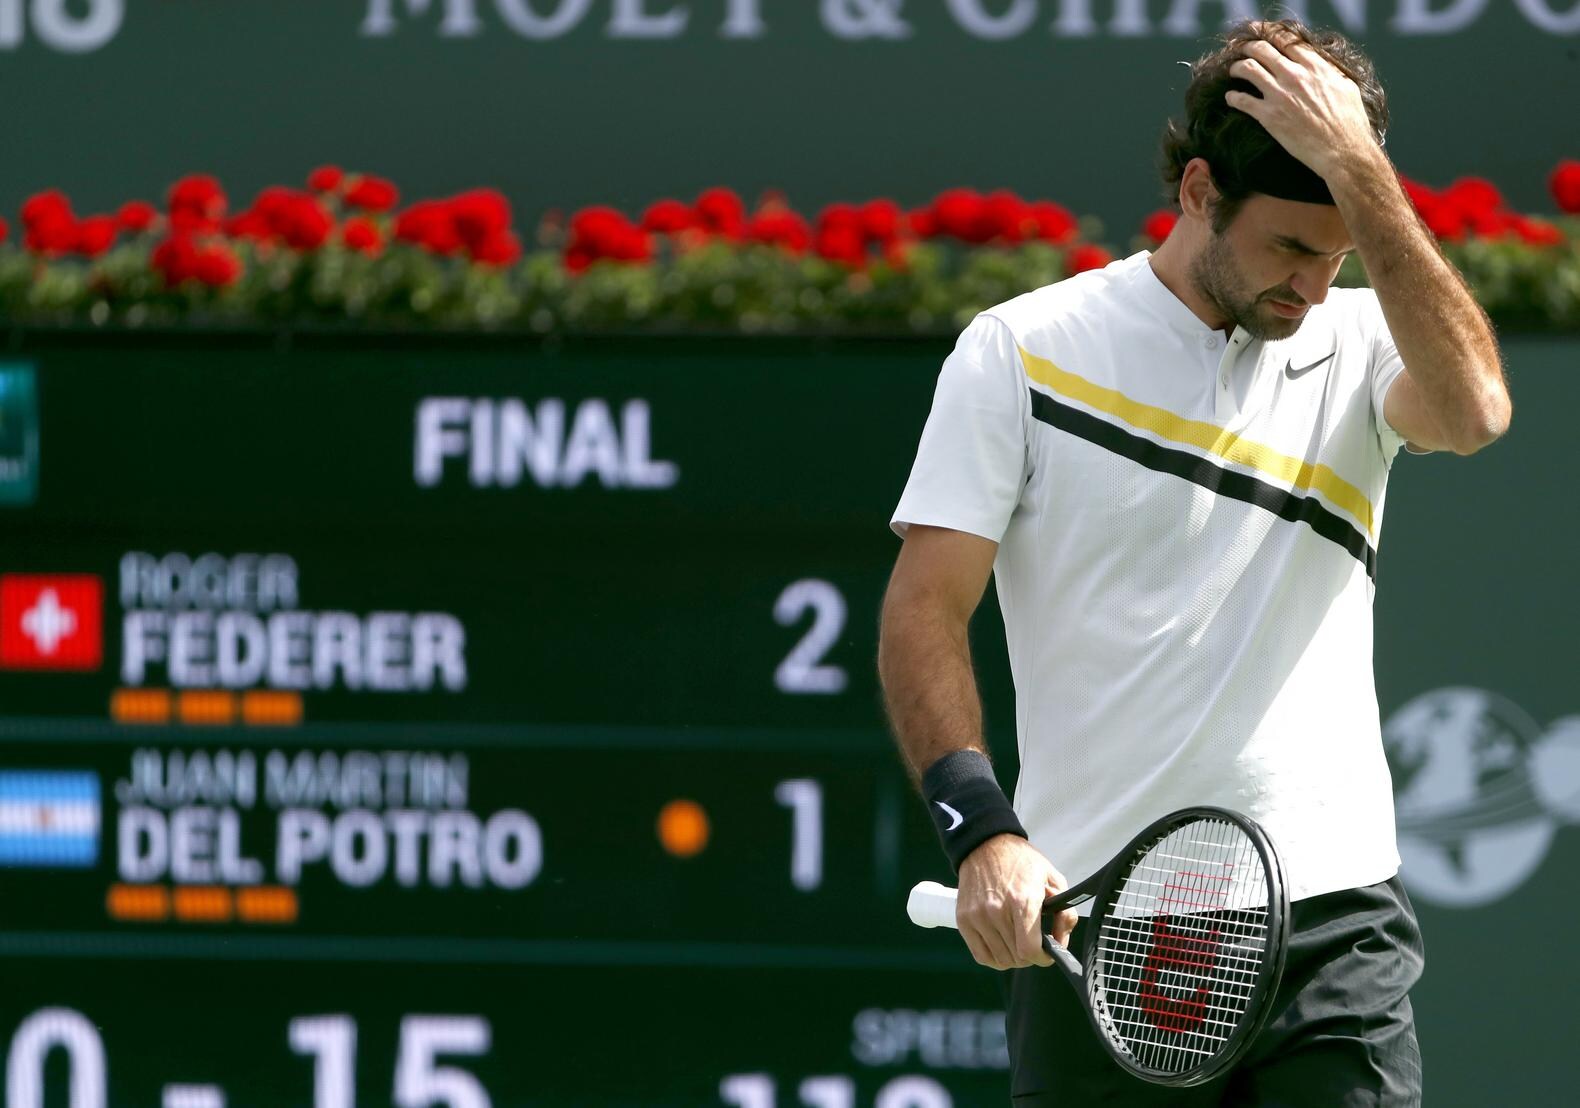 Sportblog -  Imponerende zegereeks Roger Federer na 17 zeges ten einde